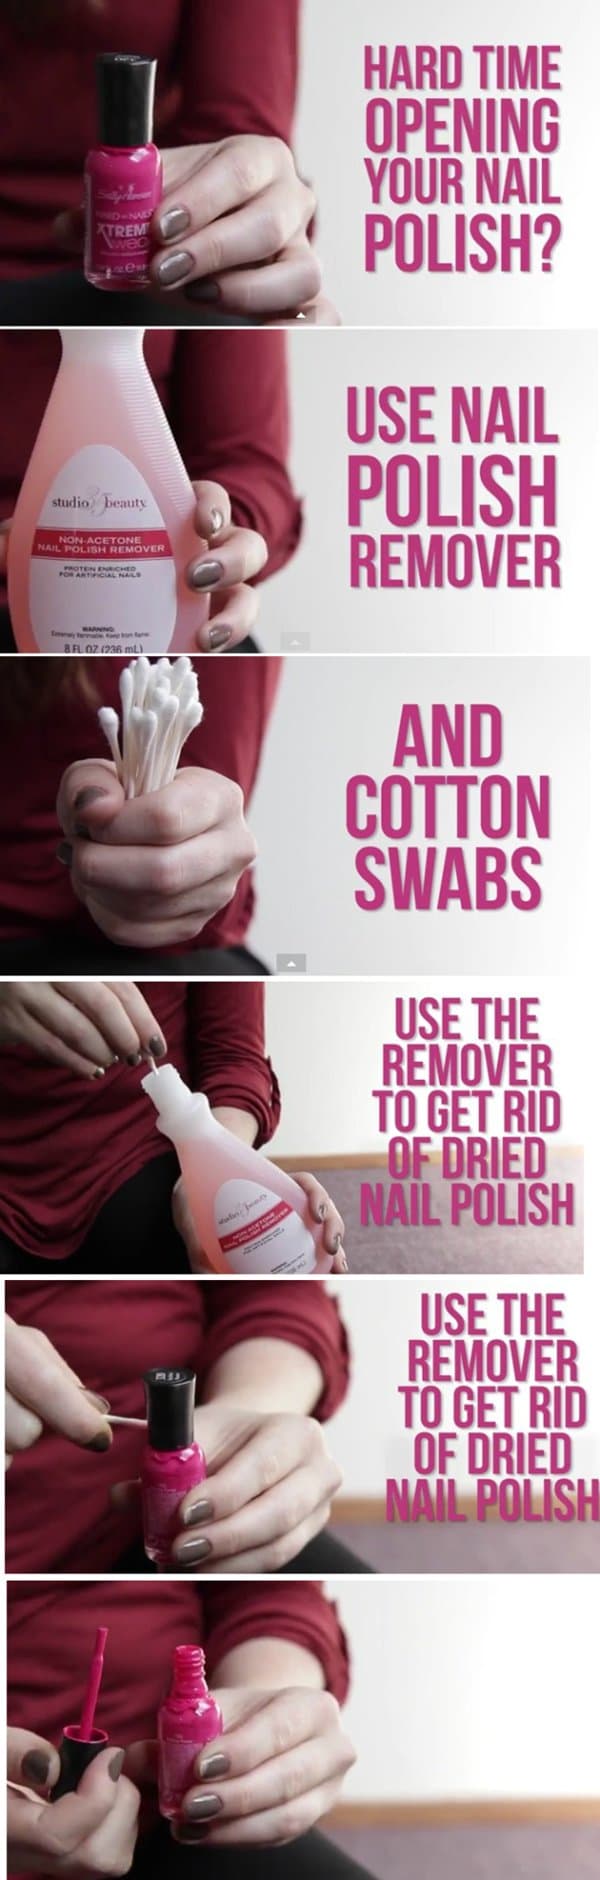 nail-polish-remover-tips